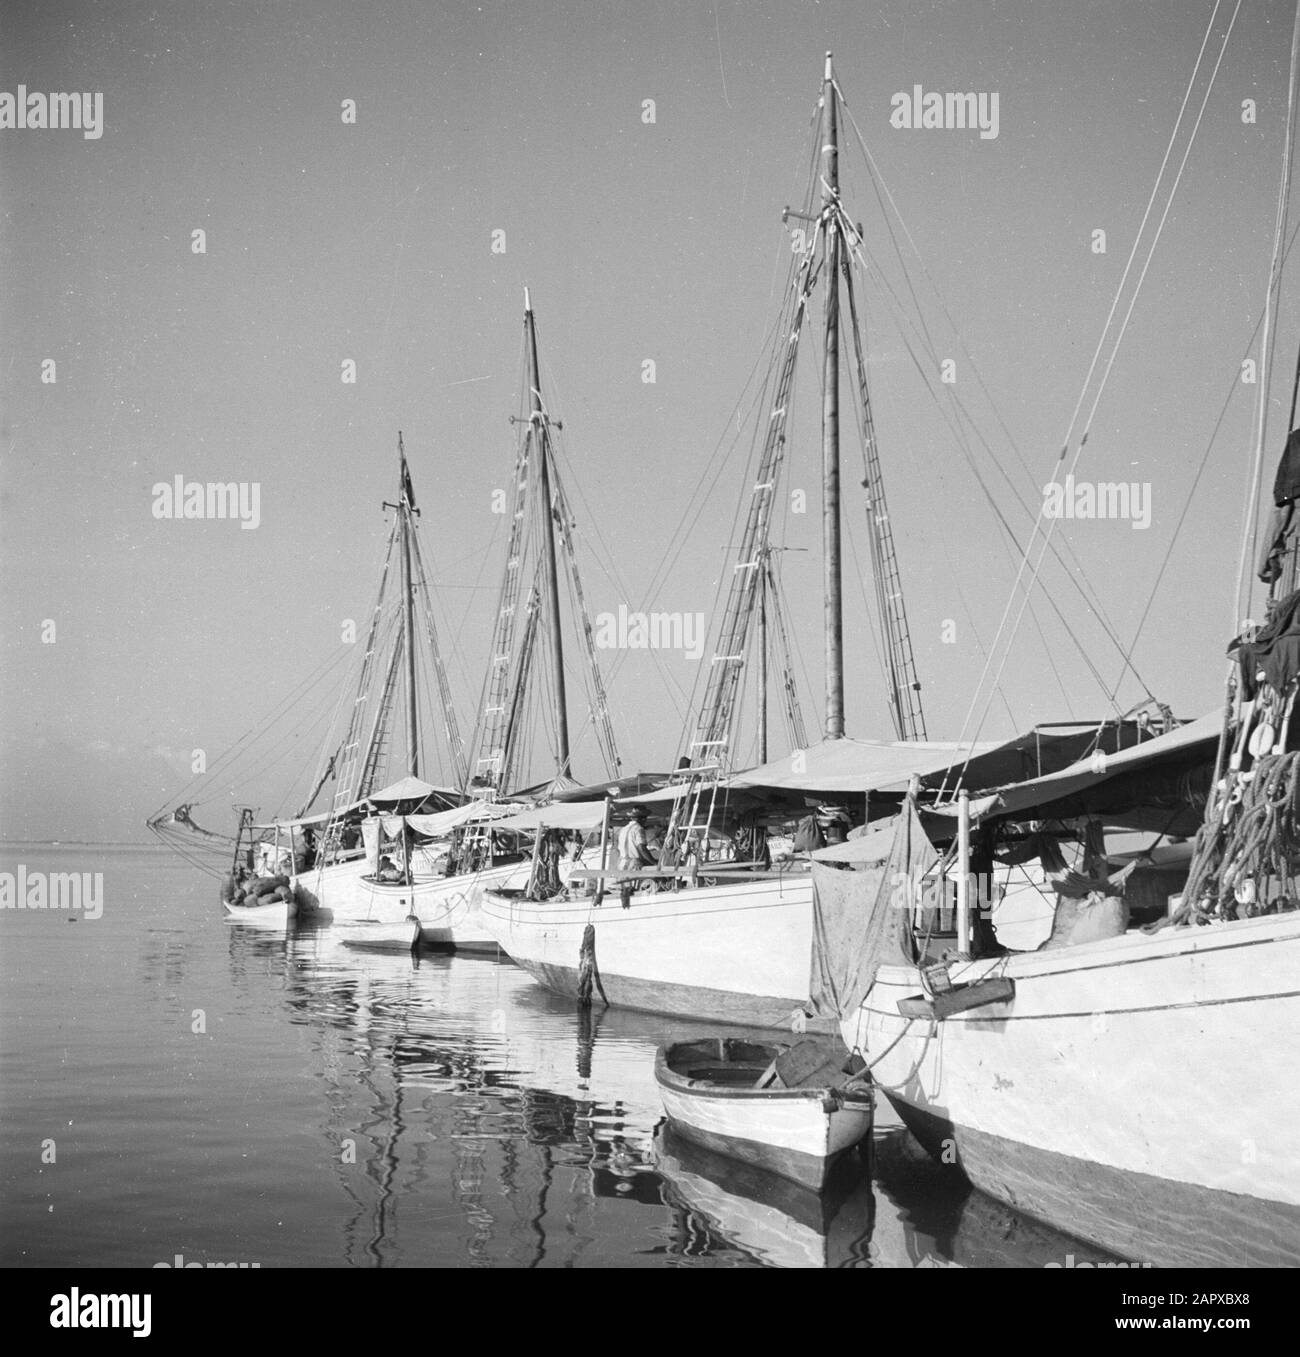 Viaggio in Suriname e le Antille Olandesi navi nel porto di Oranjestad su Aruba Data: 1947 Località: Aruba, Oranjestad Parole Chiave: Porti, navi Foto Stock